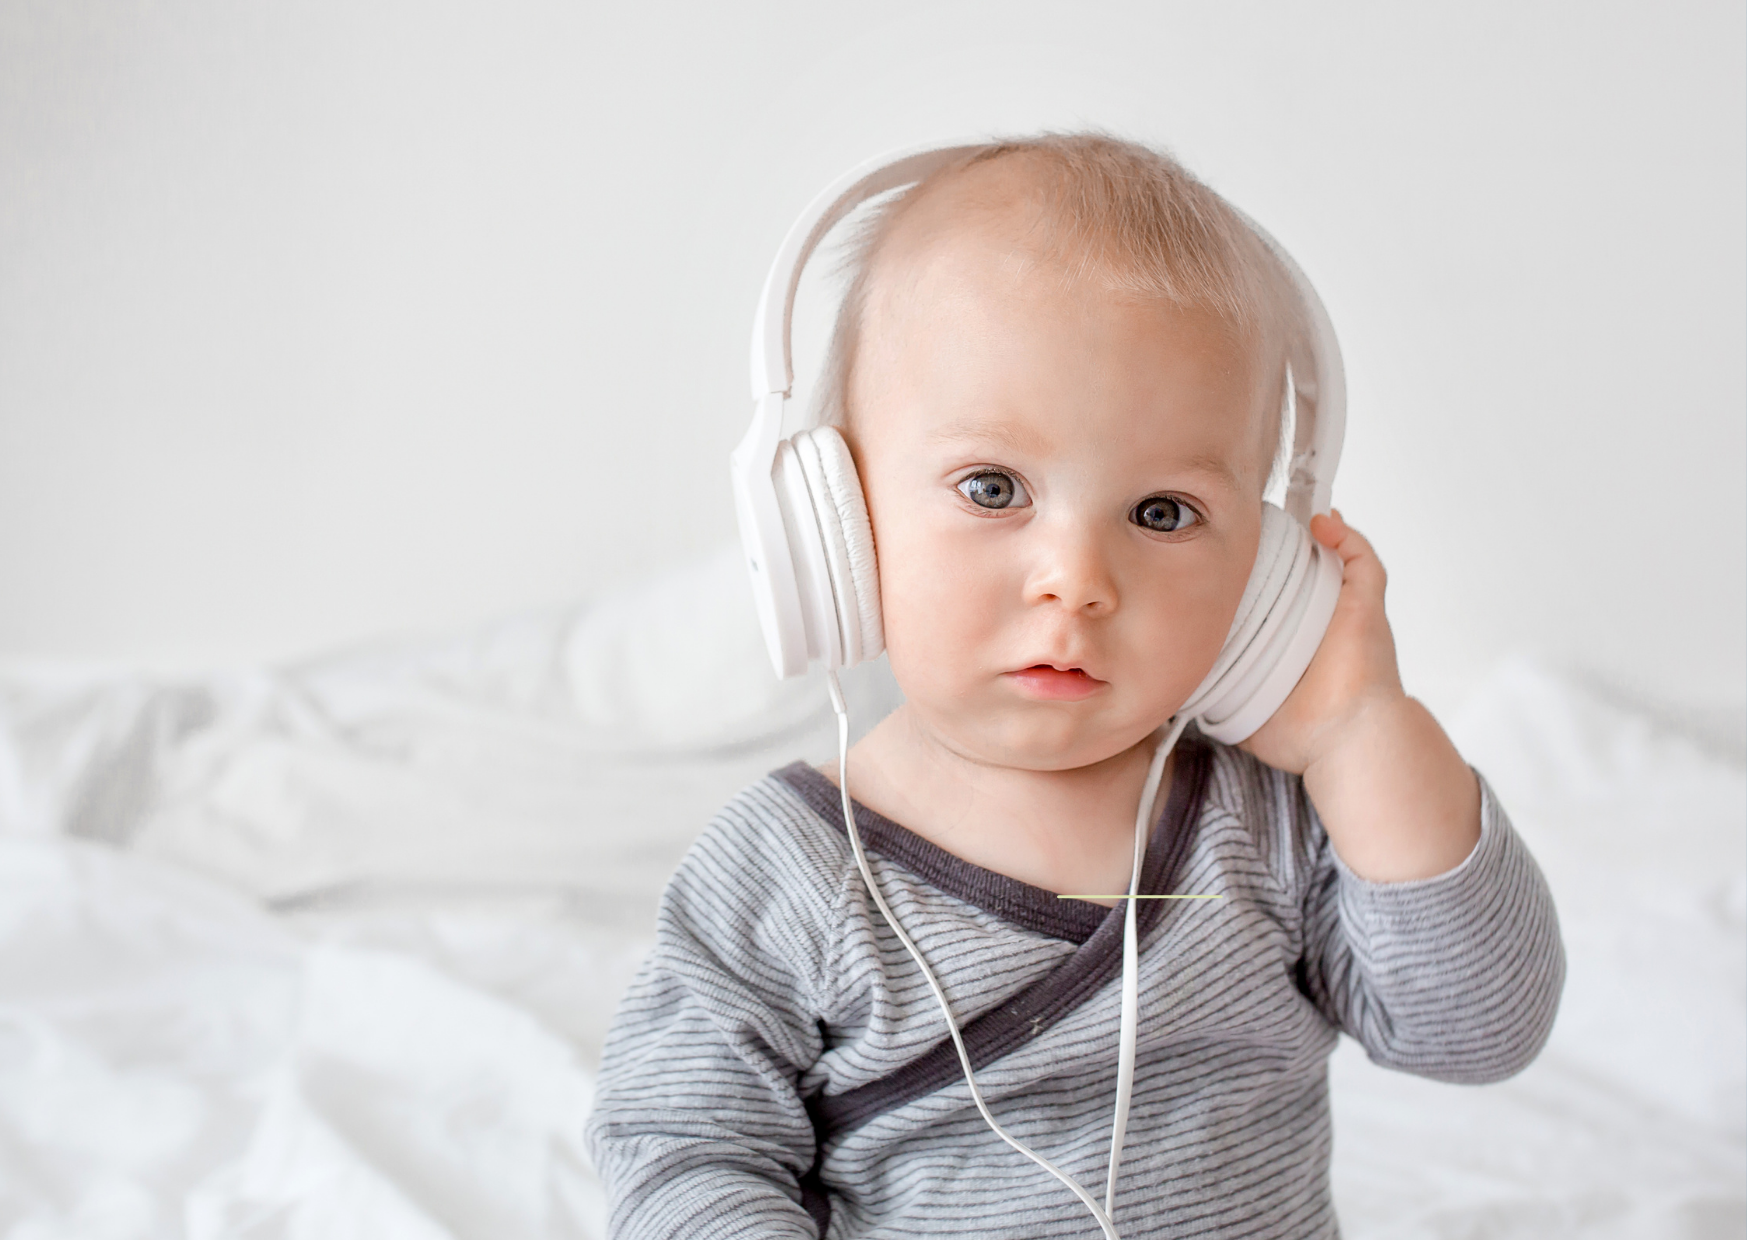 A audiometria em campo livre é suficiente para avaliar a audição da criança?